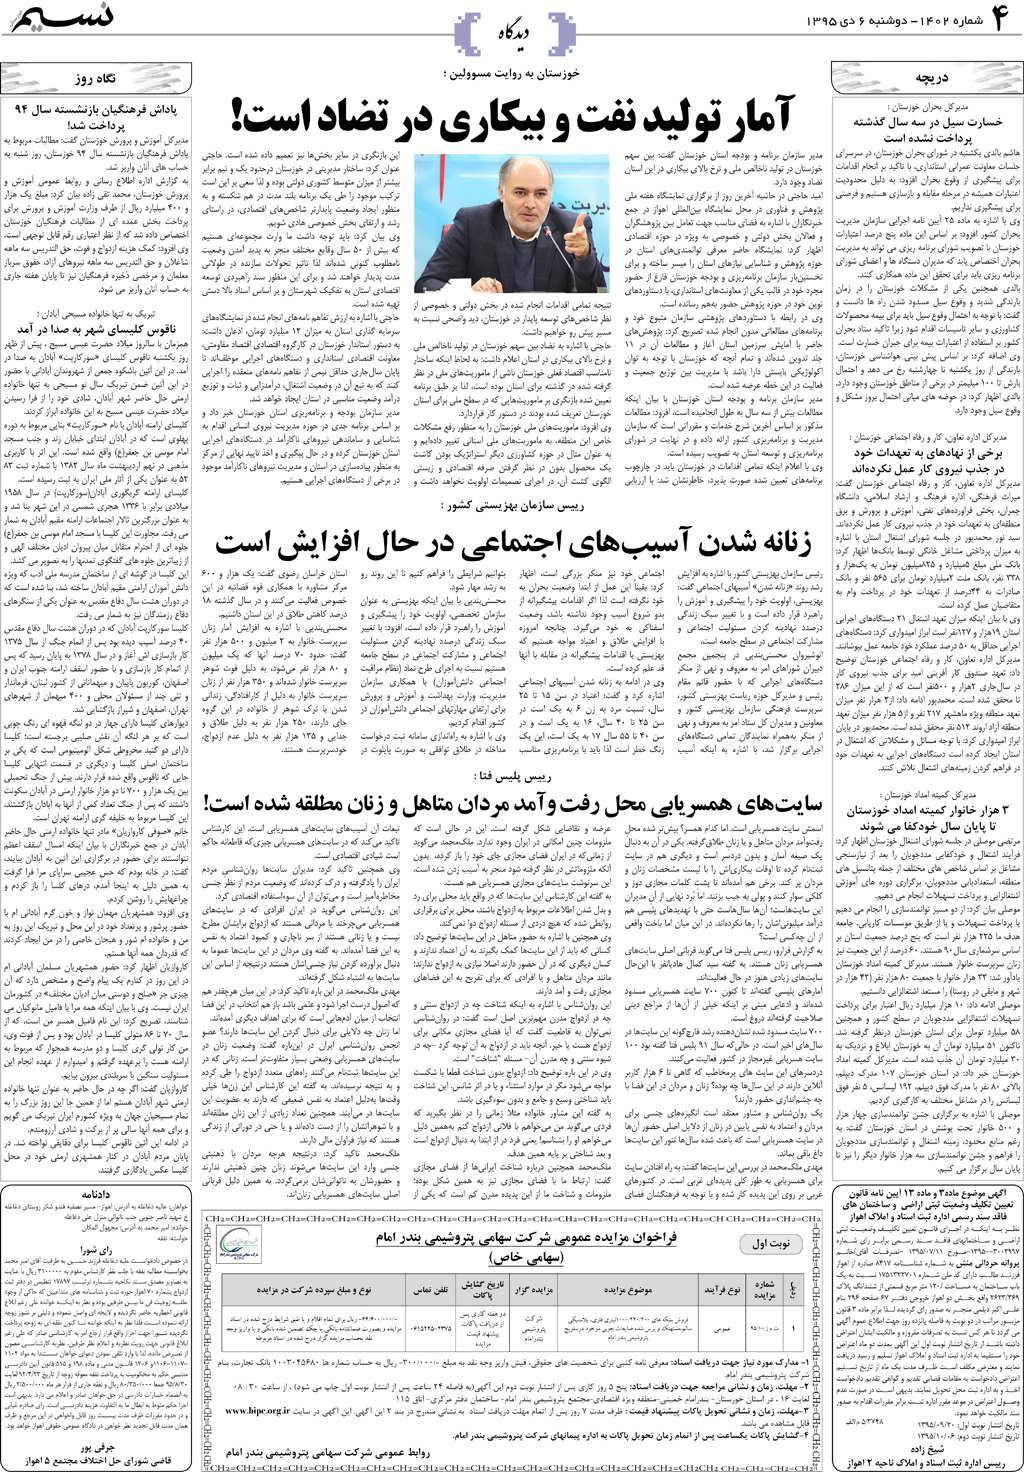 صفحه دیدگاه روزنامه نسیم شماره 1402